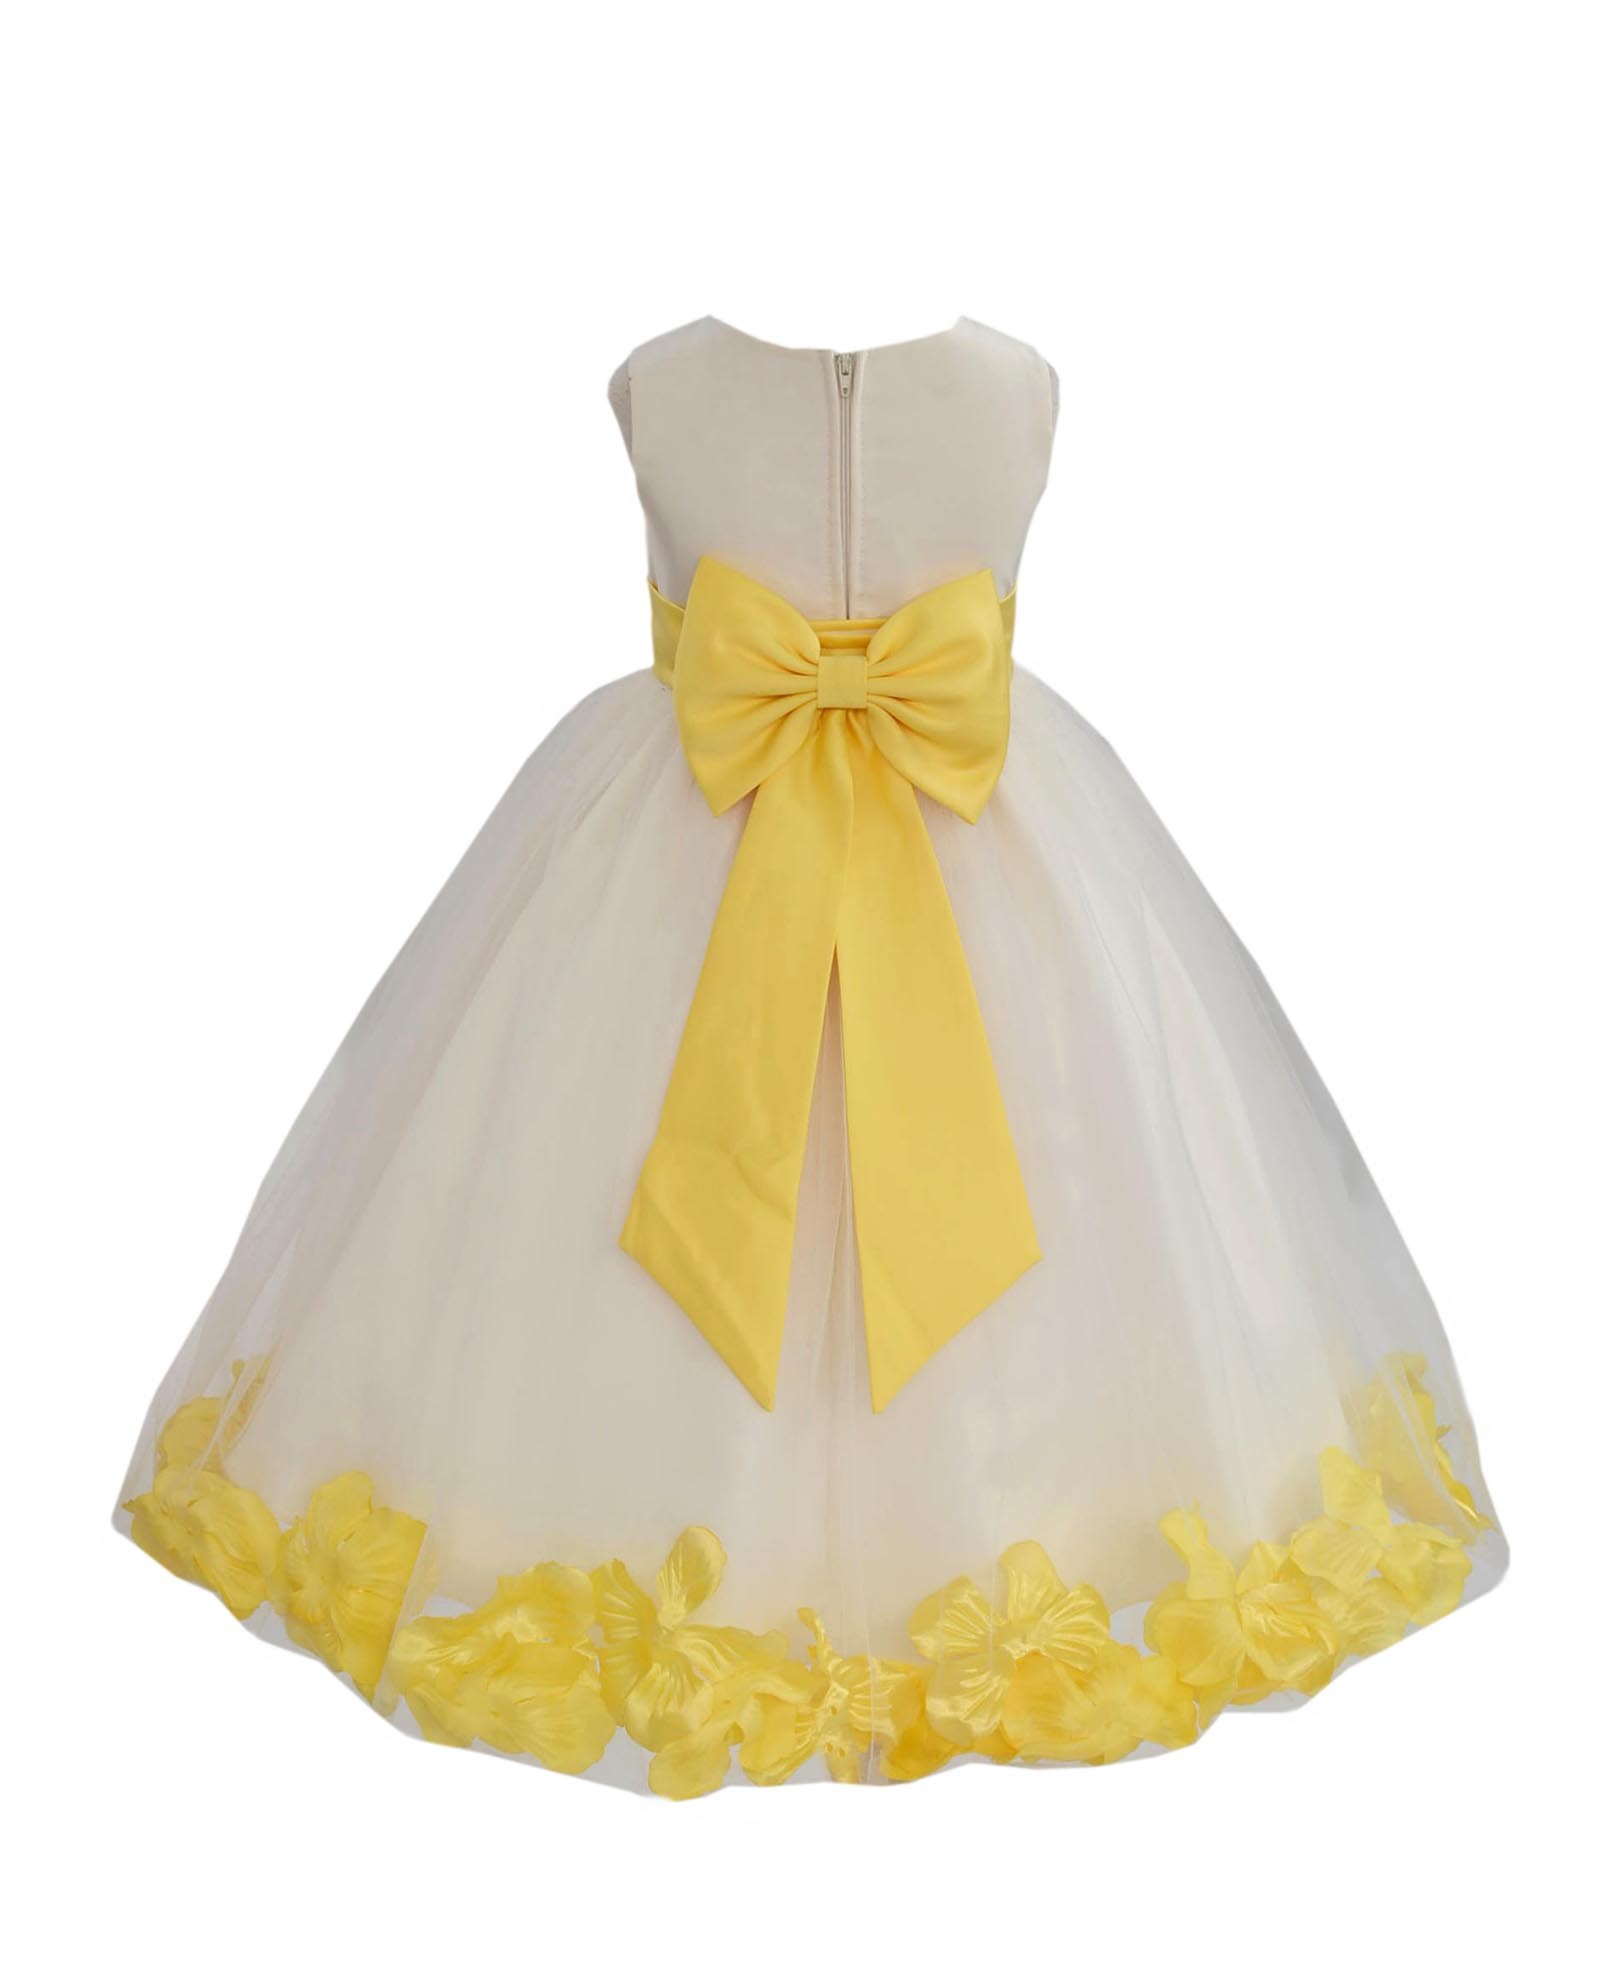 Ivory/Sunbeam Tulle Rose Petals Flower Girl Dress Recital 302a